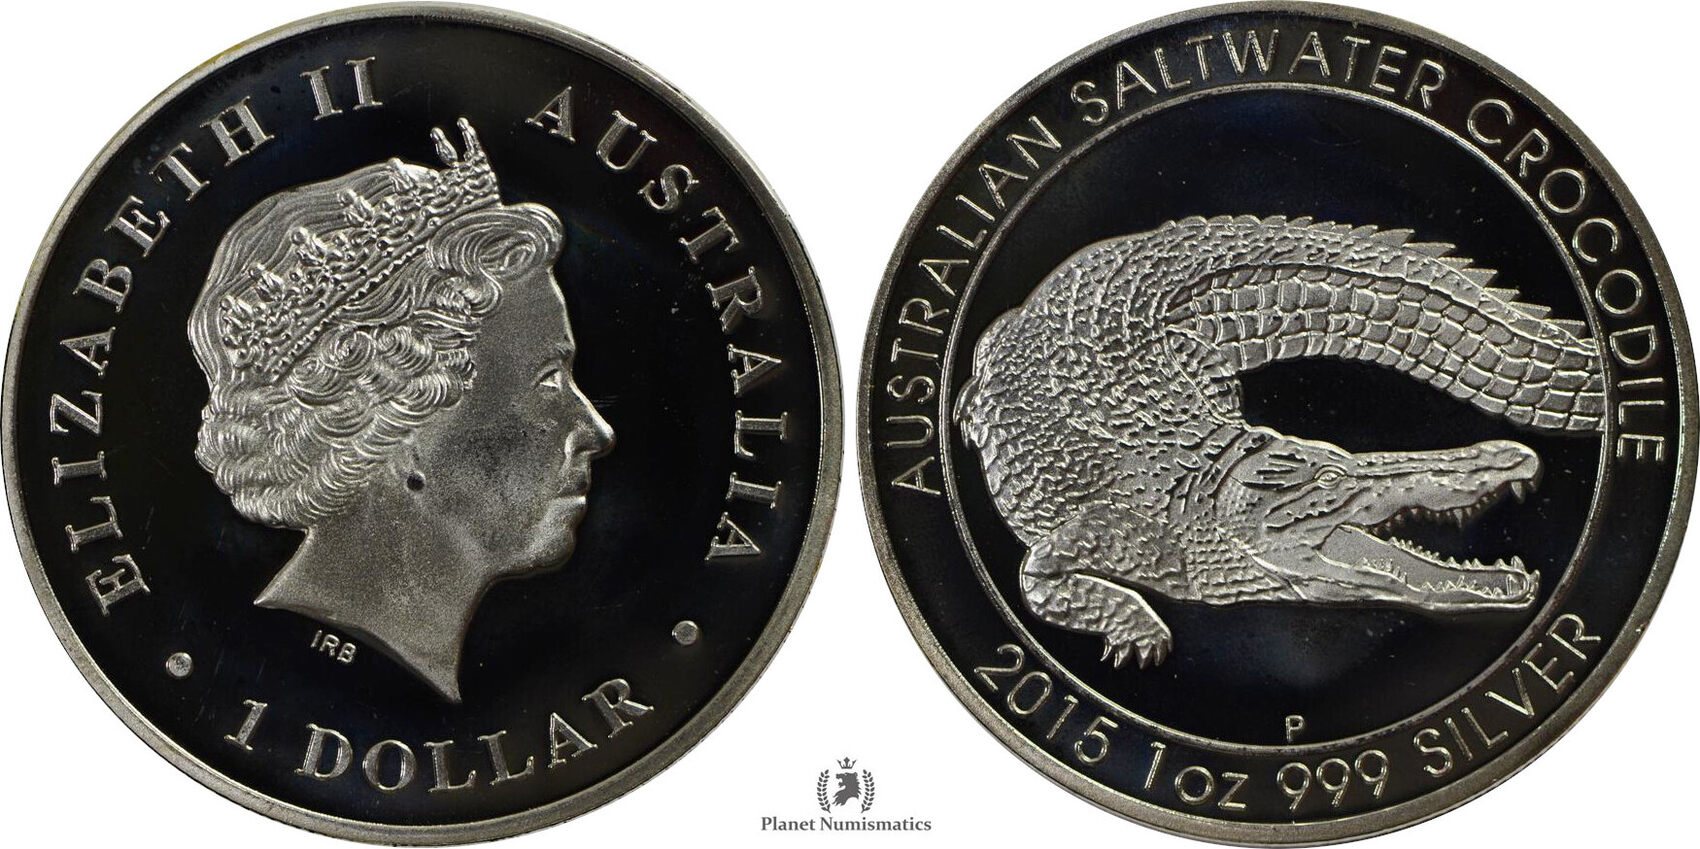 1 Доллар Австралия 2017 крокодил. Монета 0.999 5 Silver Dollar one Troy Ounce. 1 Доллар Австралия серебро черепаха. 1 Доллар 2015 Австралия Кукабарра 25 лет. 1 доллар австралия серебро